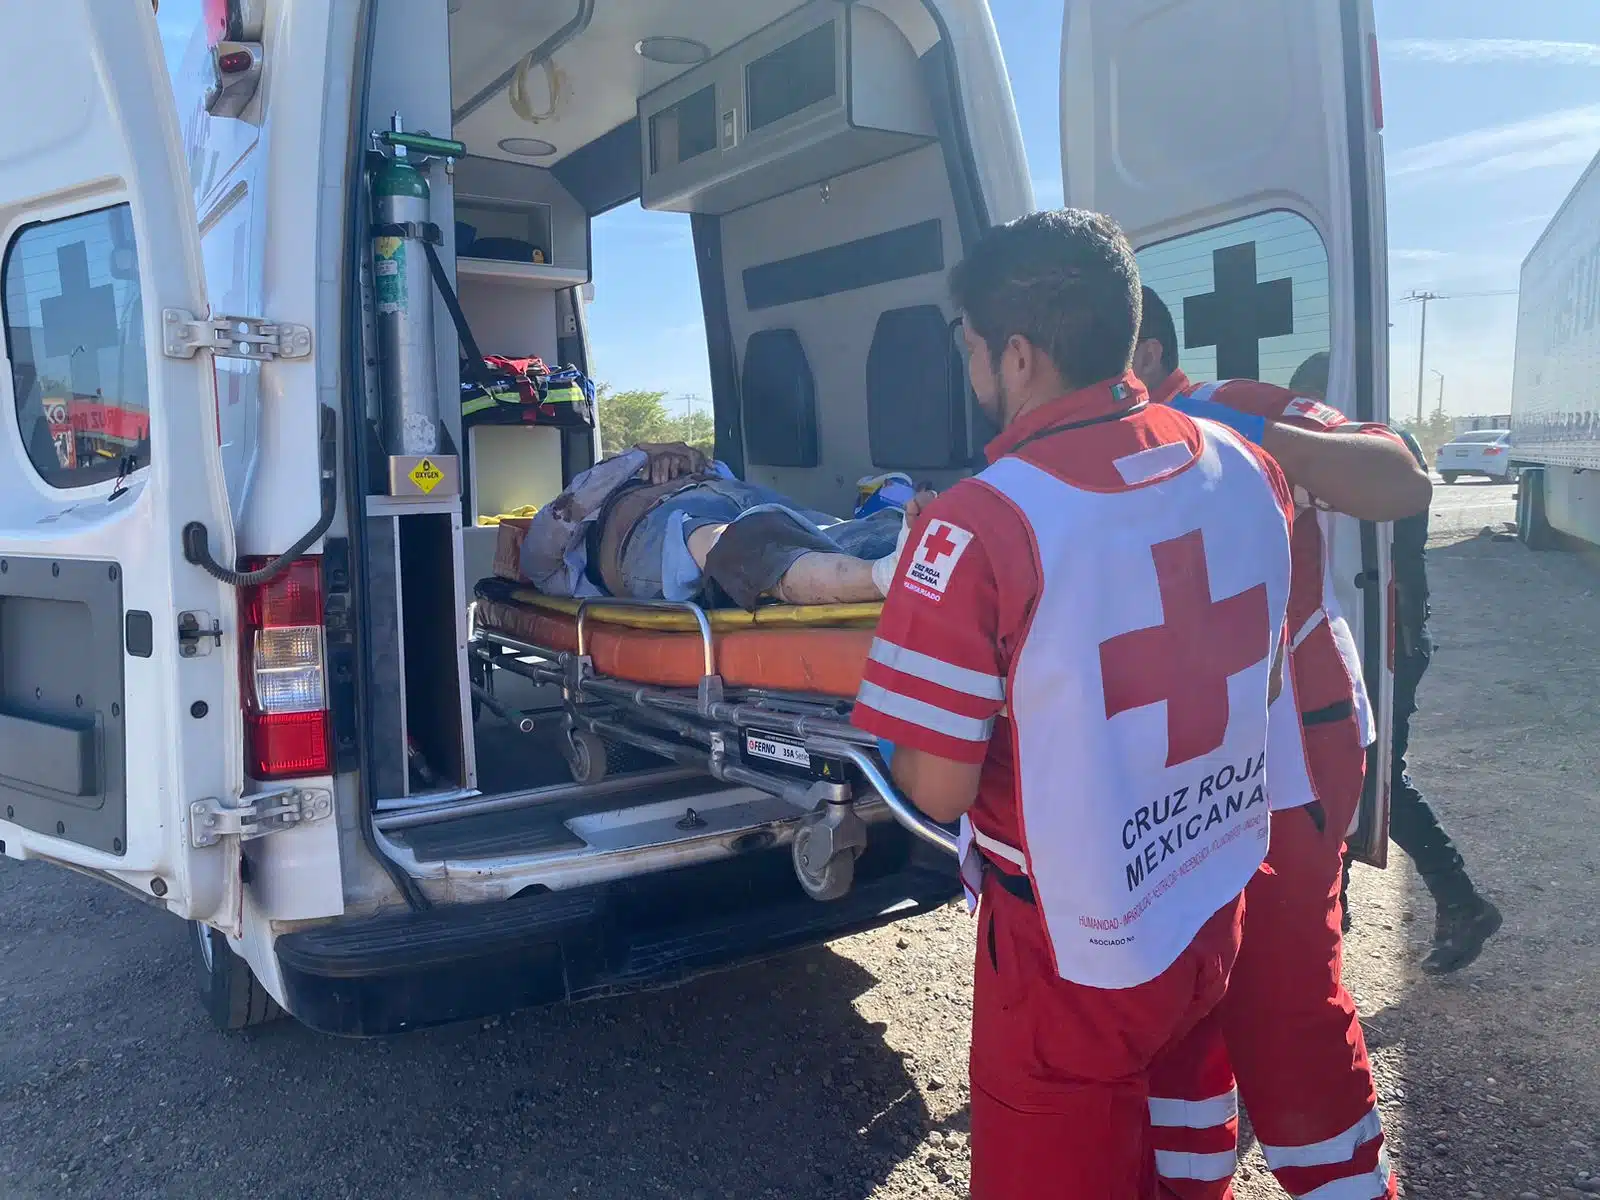 Paramédicos de Cruz Roja Mexicana brindaron los primeros auxilios al lesionado.